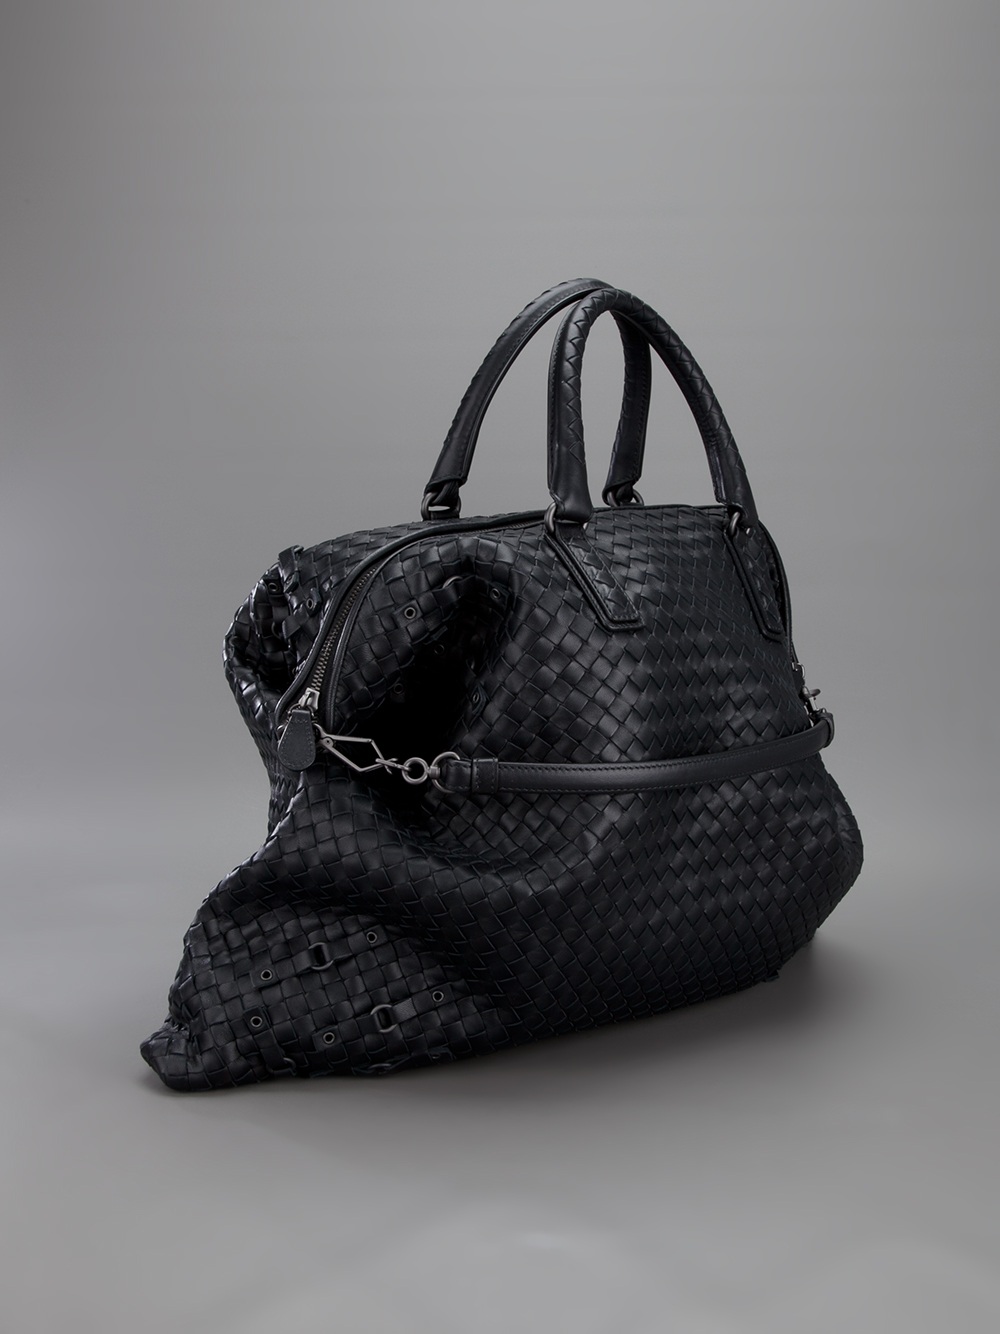 Bottega Veneta Shopper Intrecciato Leather Tote in Black - Lyst